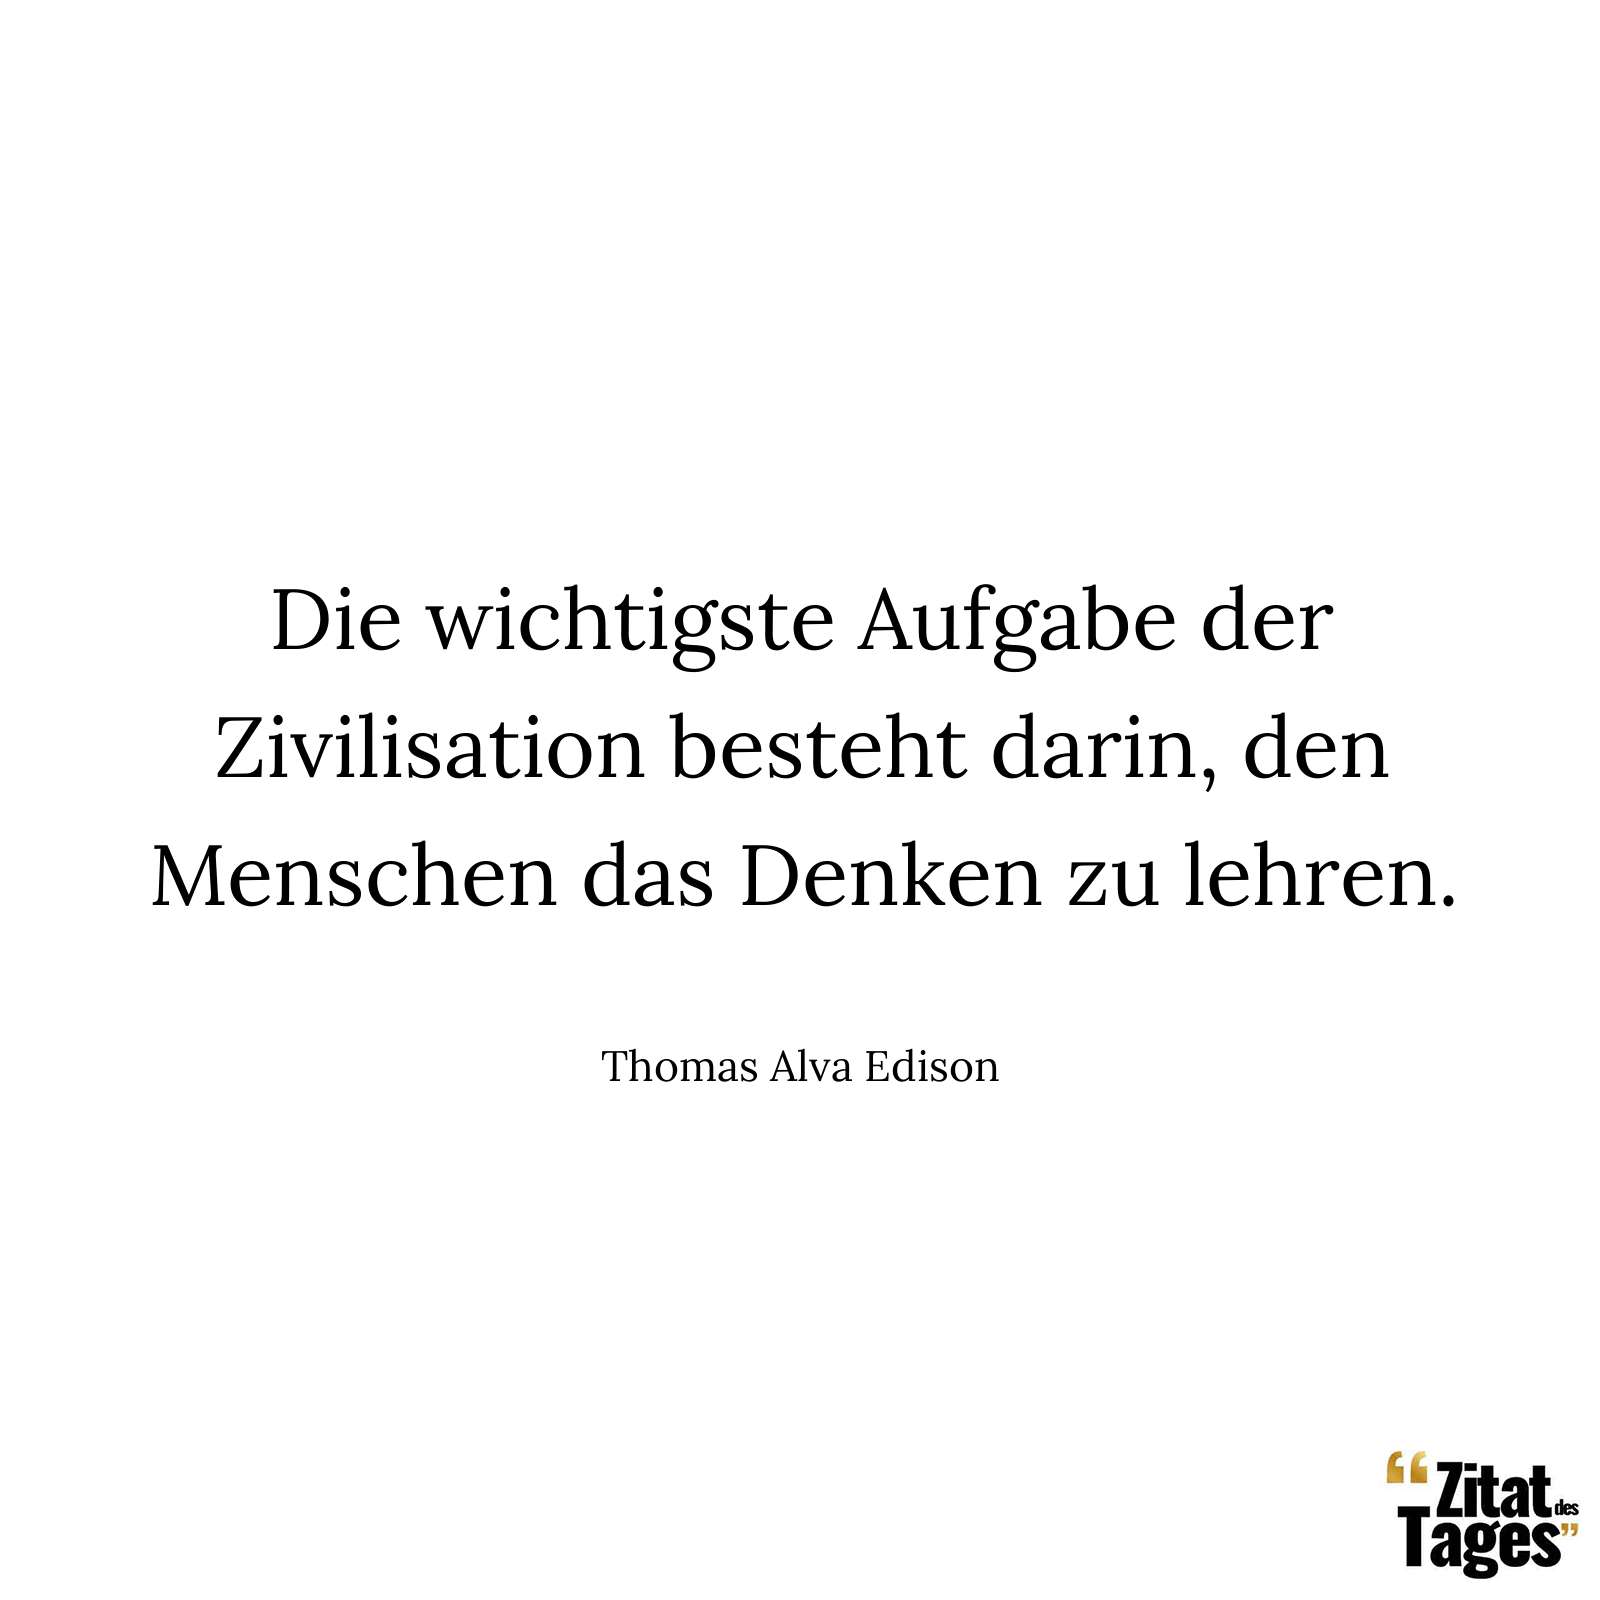 Die wichtigste Aufgabe der Zivilisation besteht darin, den Menschen das Denken zu lehren. - Thomas Alva Edison